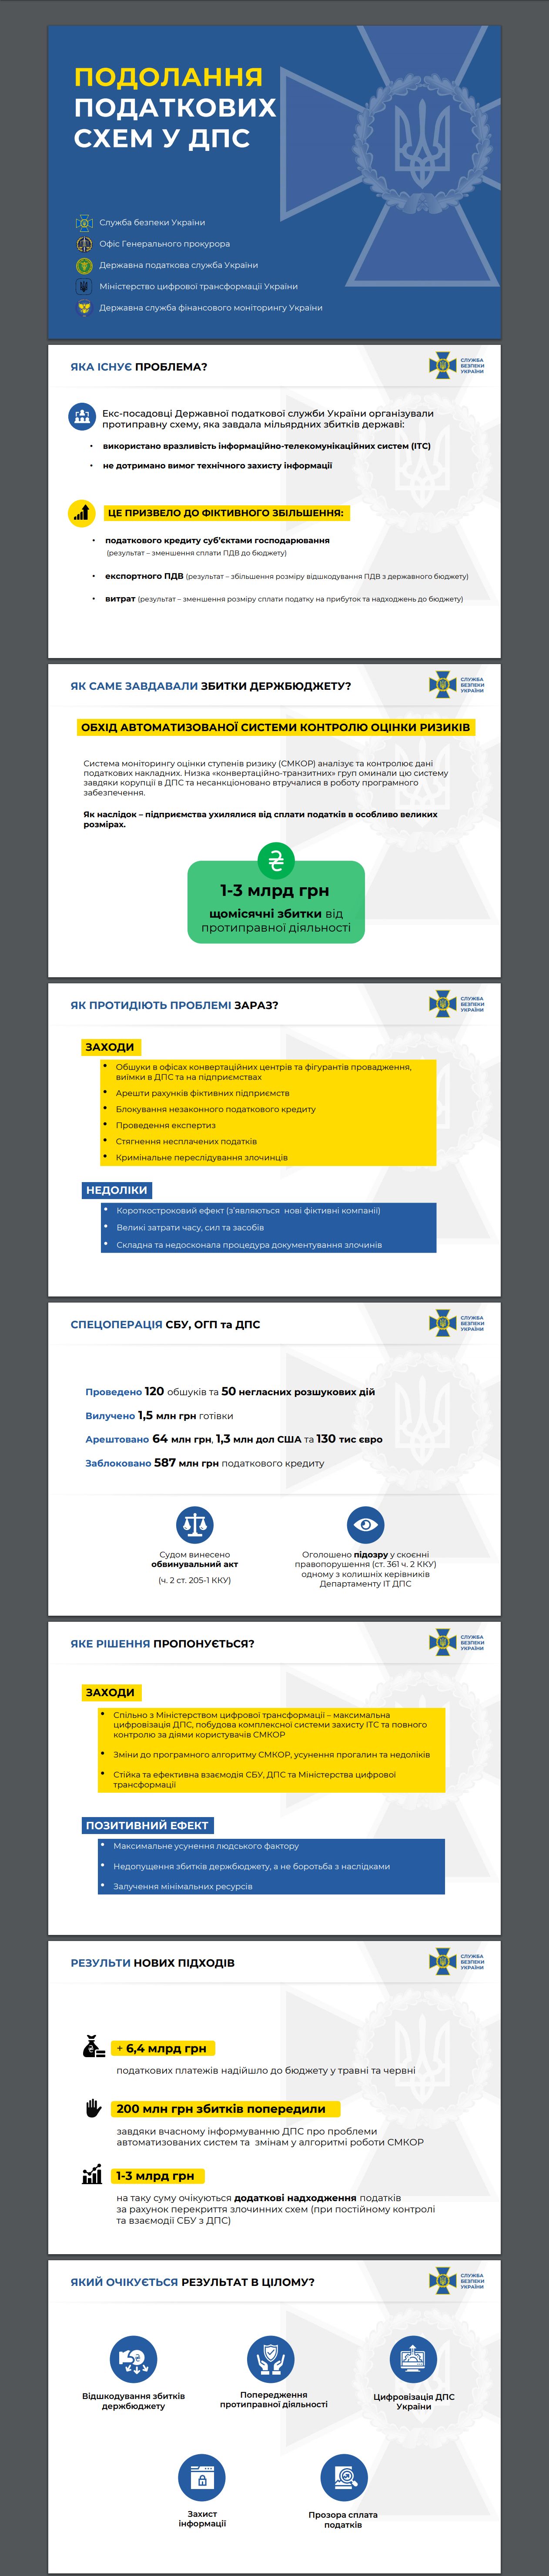 https://ssu.gov.ua/uploads/documents/2020/07/02/04-06-podolannya-podatkovikh-skhem-u-dps-2020.pdf